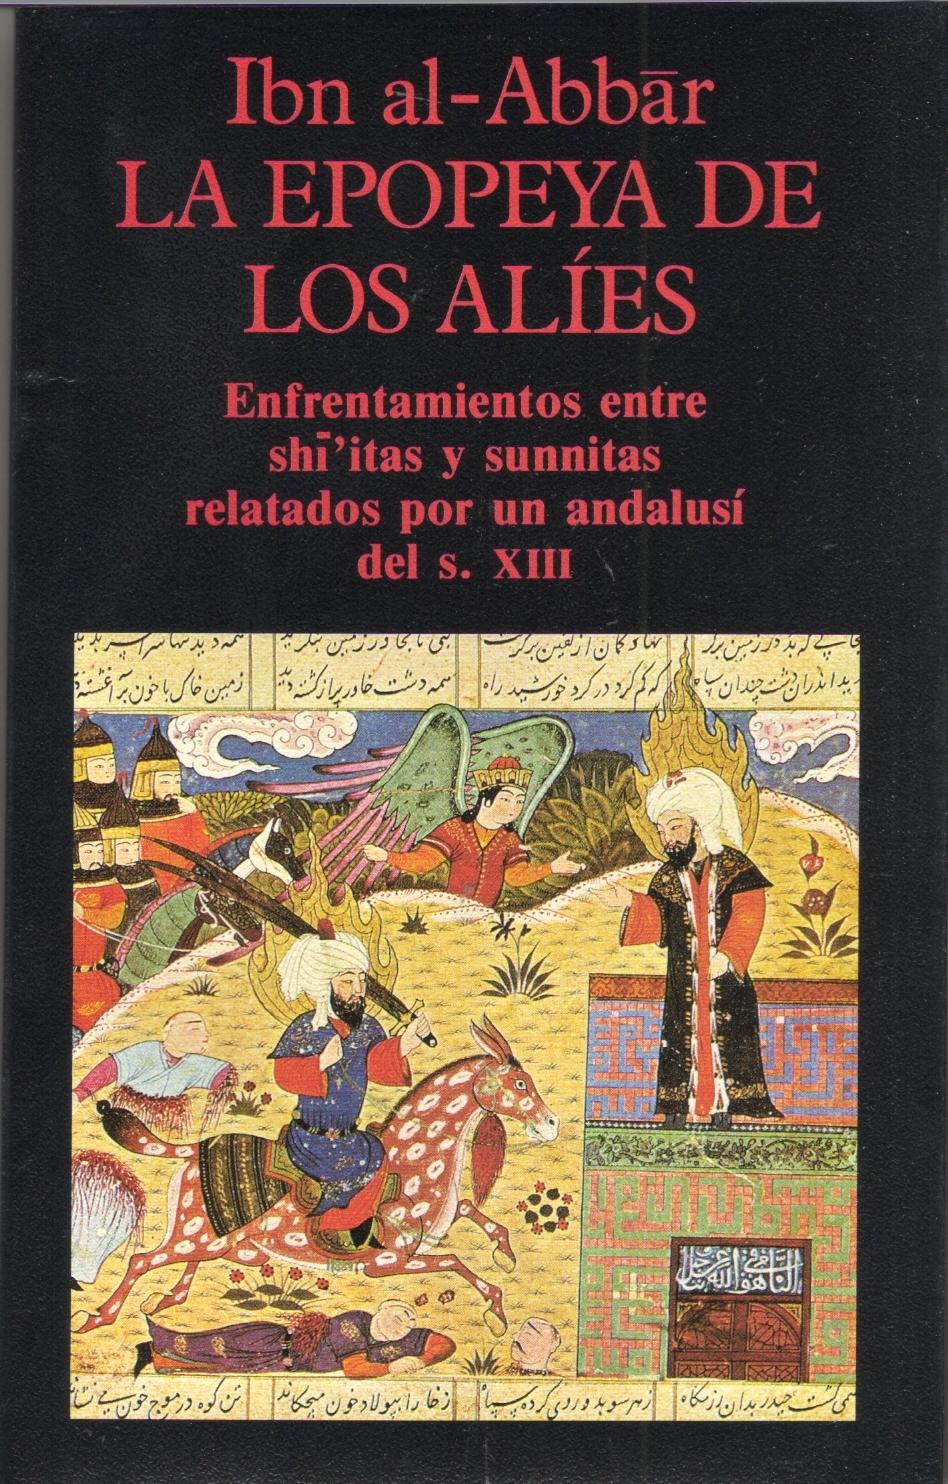 La epopeya de los alíes. Enfrentamientos entre shi'itas y sunnitas relatados por un andalusí del s. XIII. 